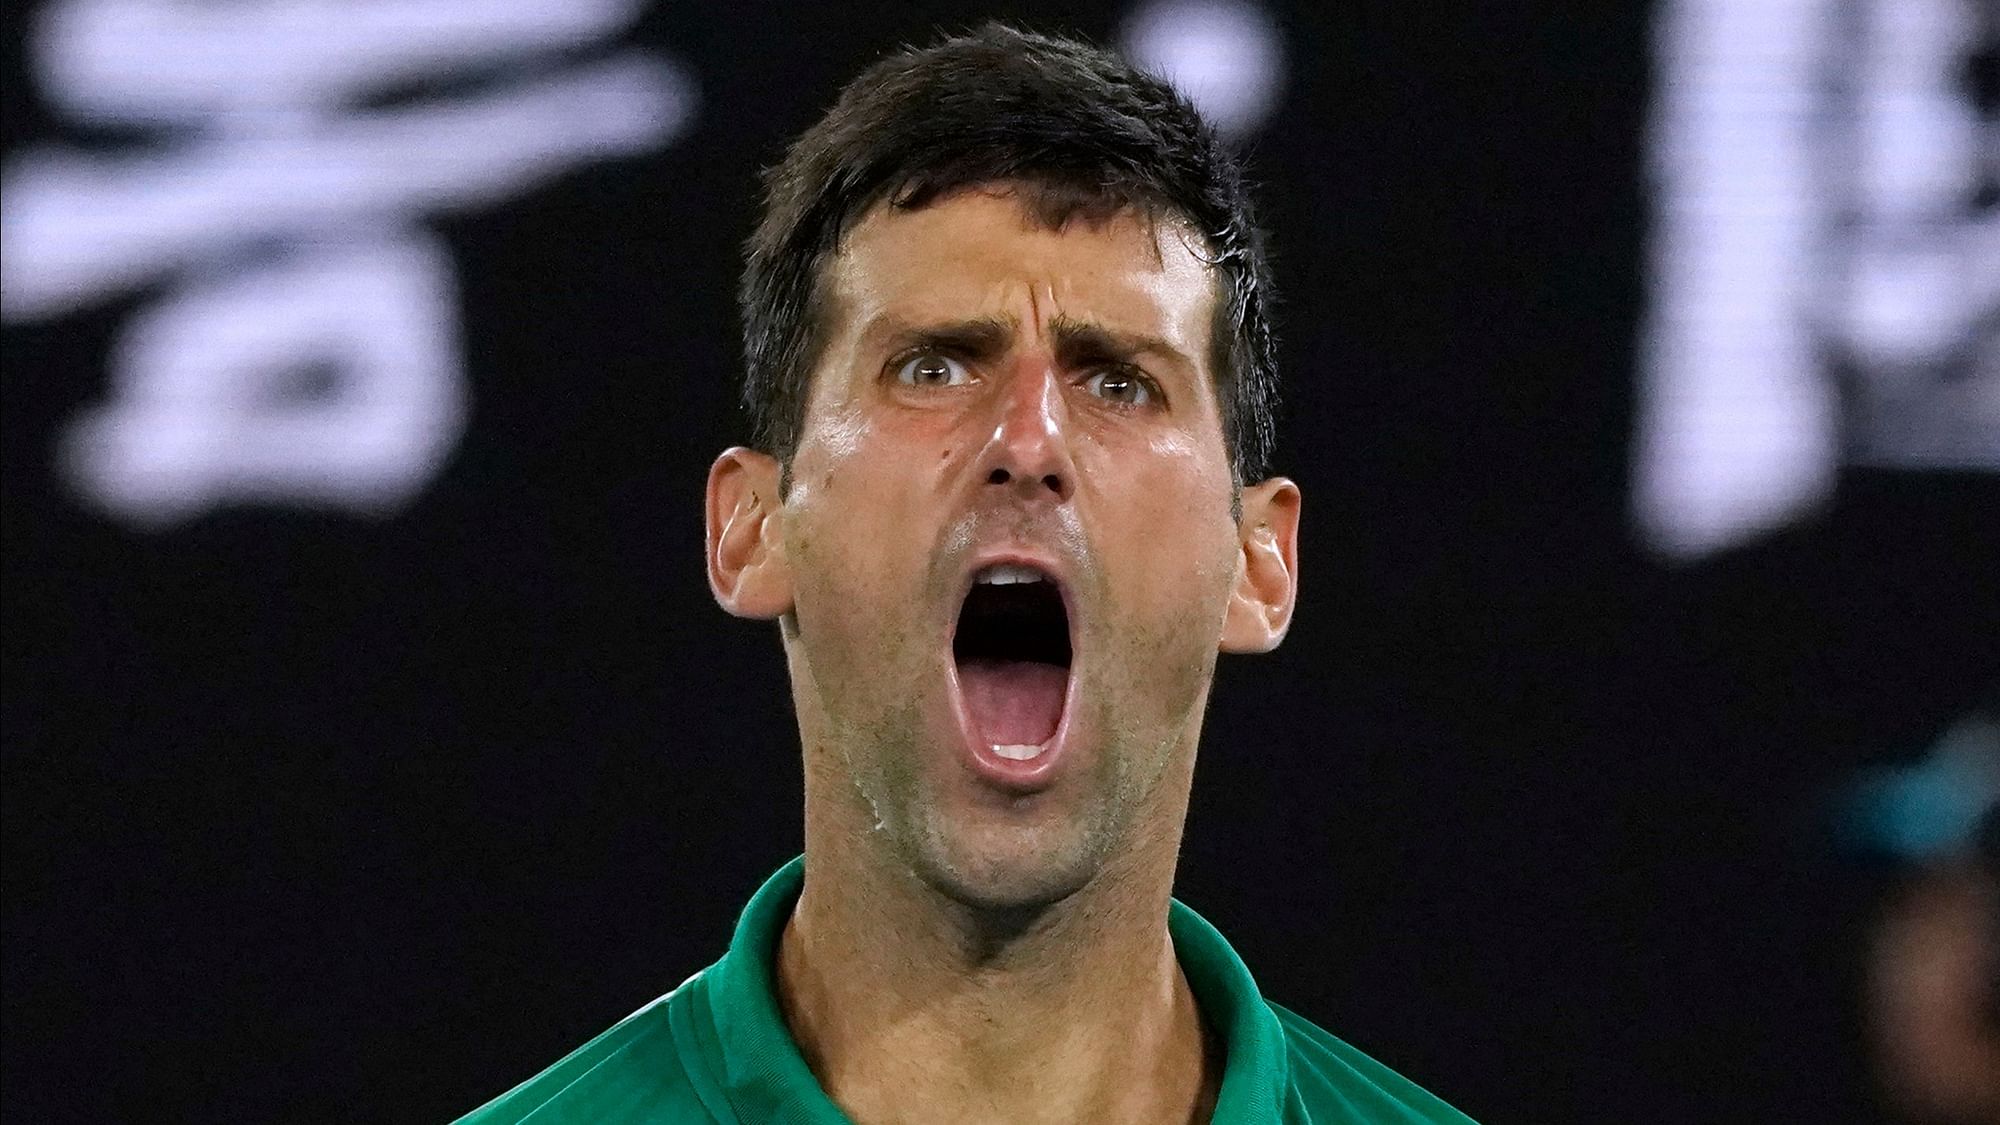 Seven-time champion Novak Djokovic won against the 20-time Major winner 7-6 6-4 6-3.